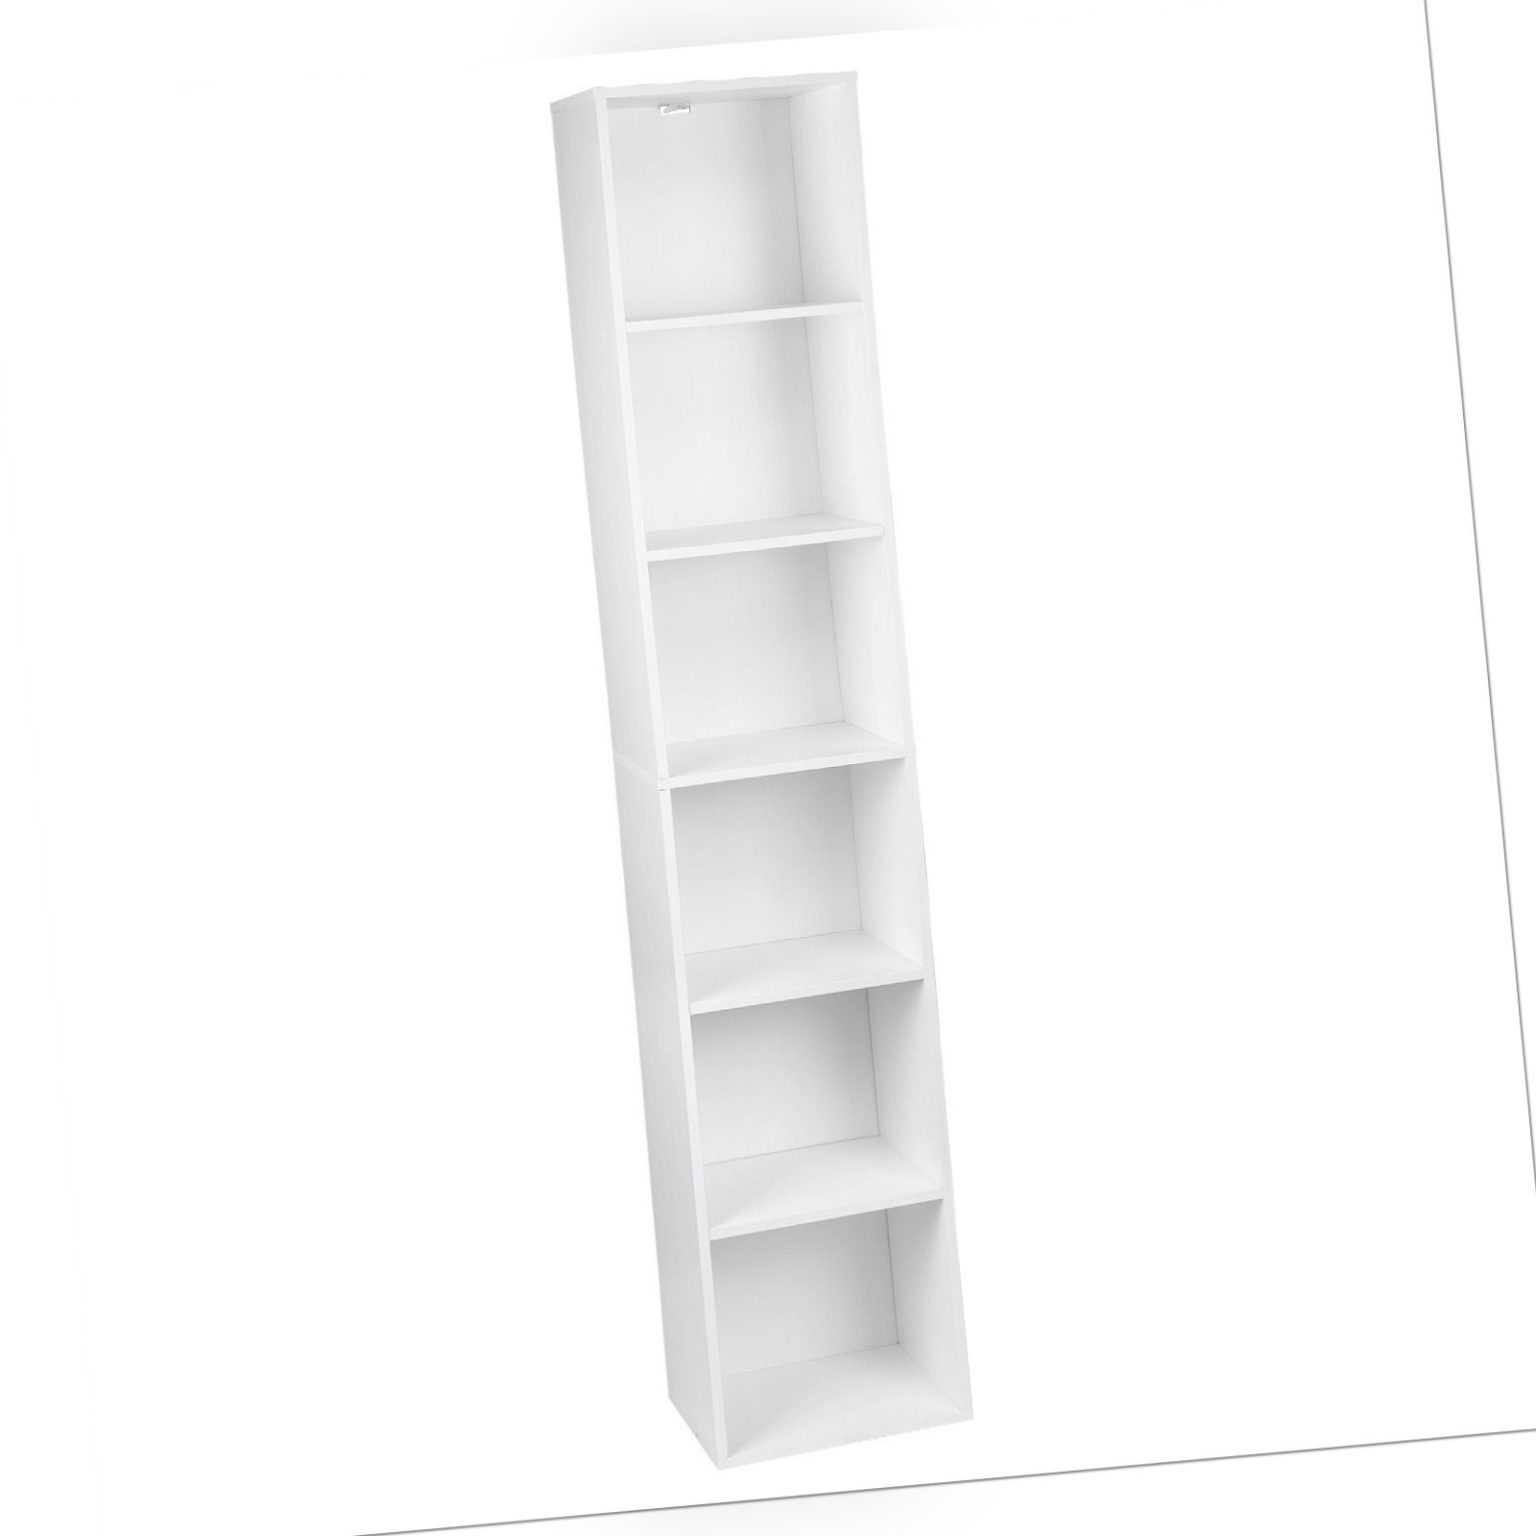 Bücherregal Standregal Raumteiler Aufbewahrungregal MDF 6 Fächer Weiß SK003ws6